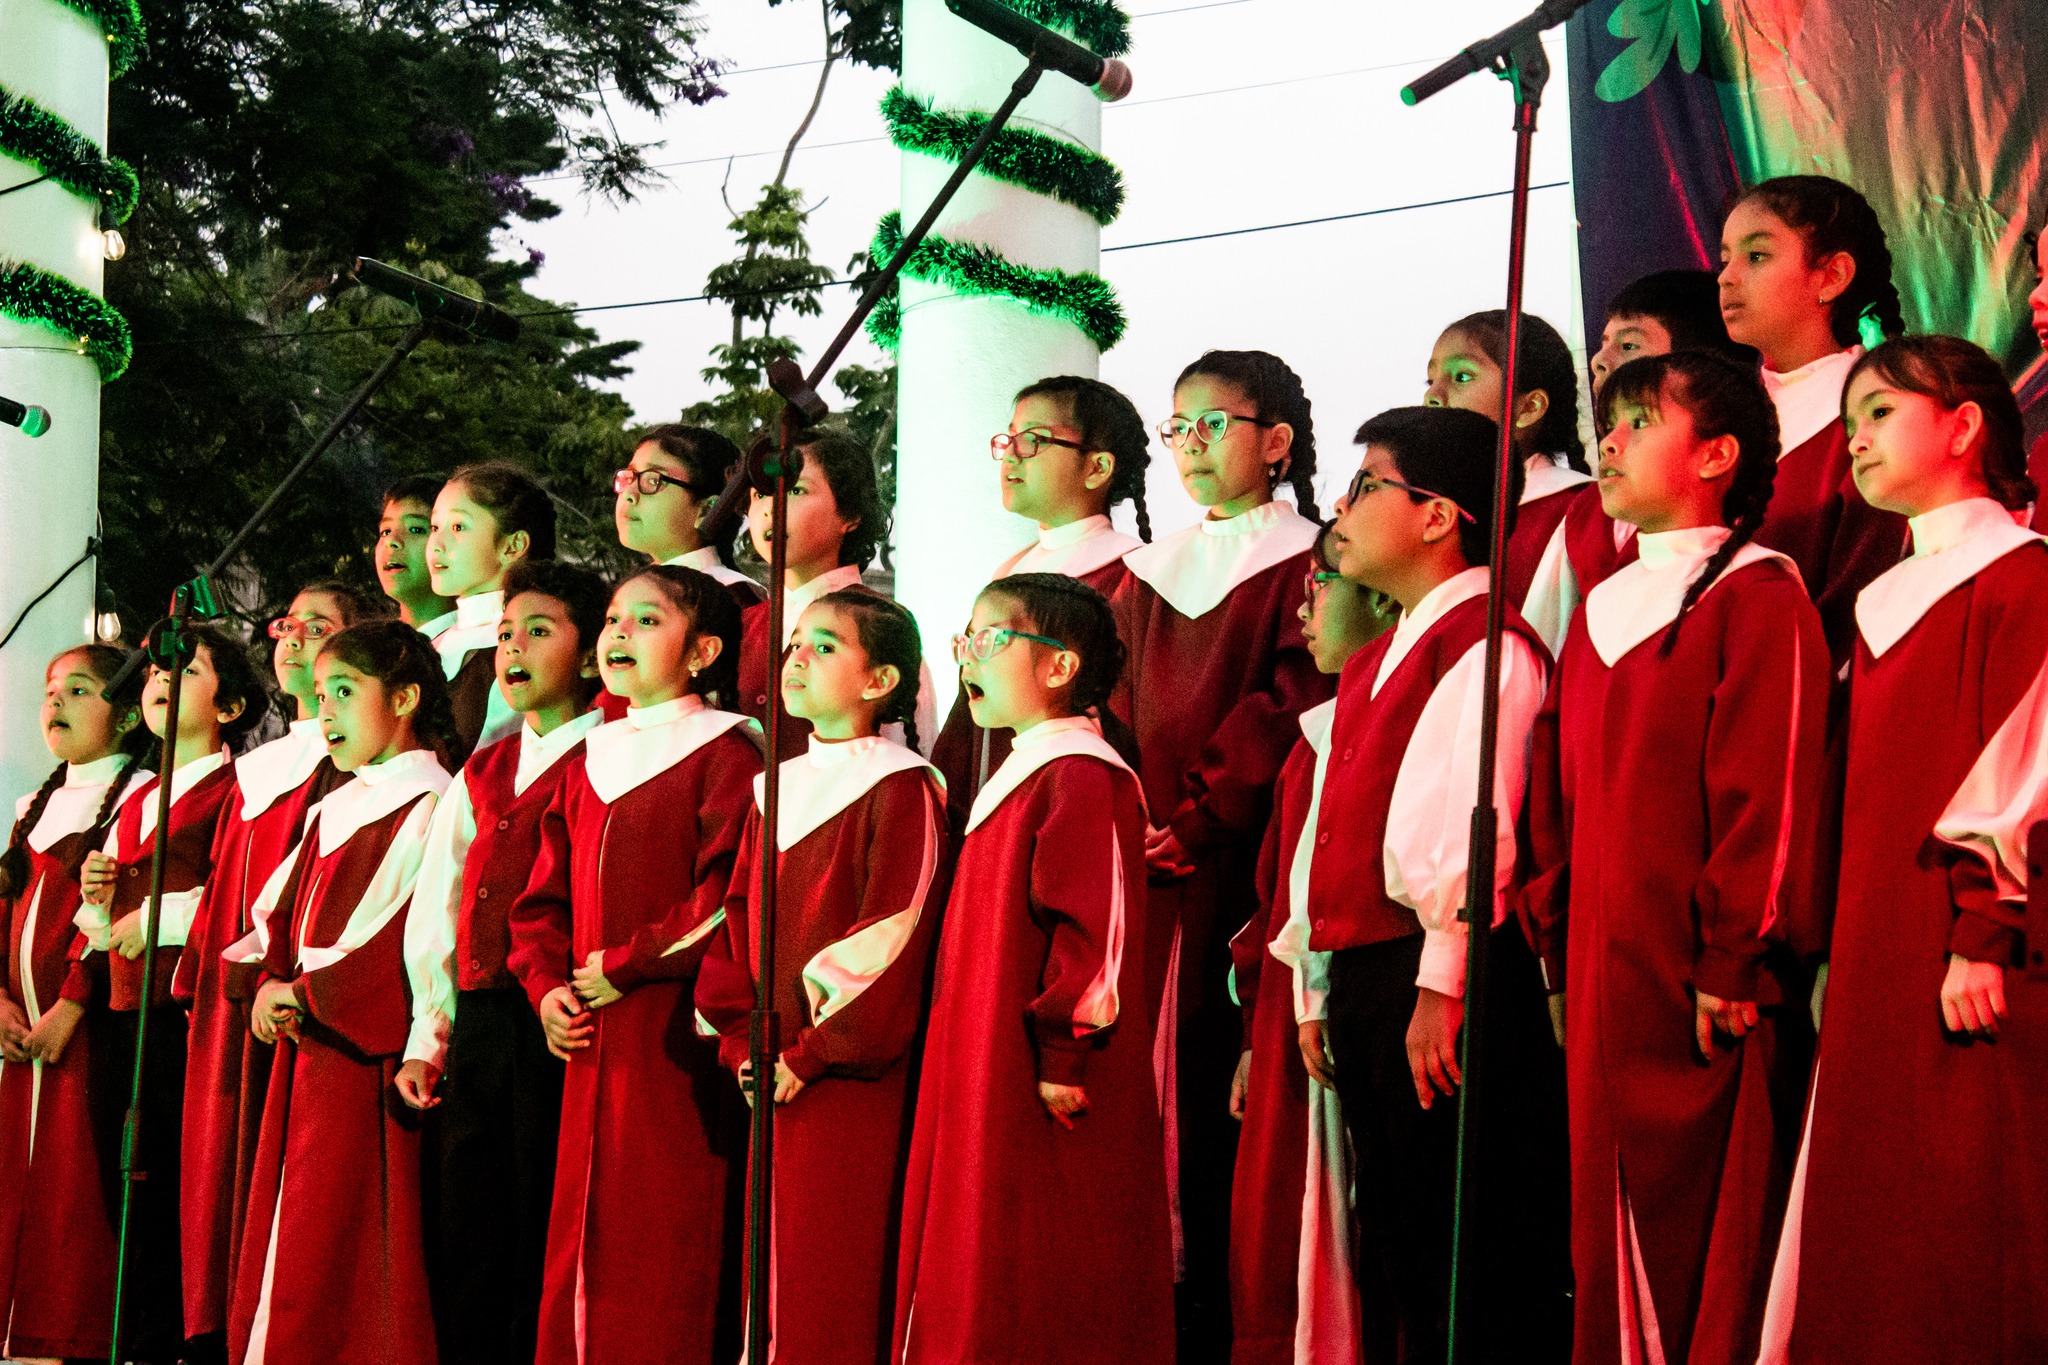 Coro Nacional de Niños del Perú presenta su espectáculo “Encantamiento de Nochebuena” en el LUM